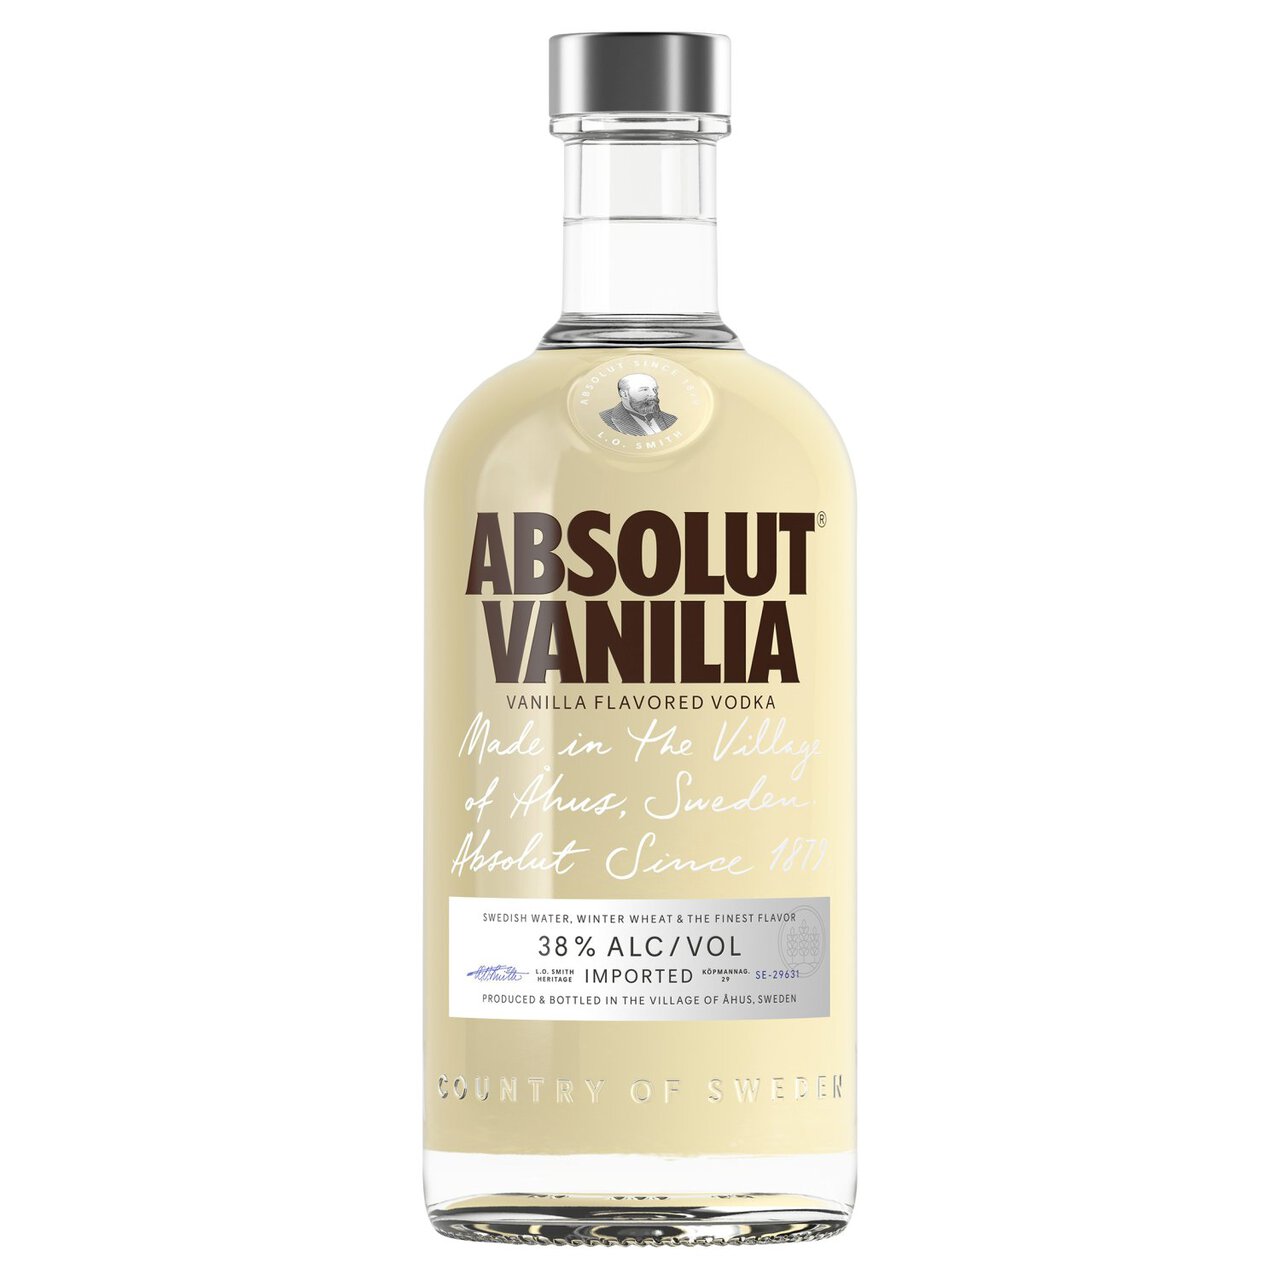 Absolut Vanilia Vanilla Flavoured Swedish Vodka 70cl